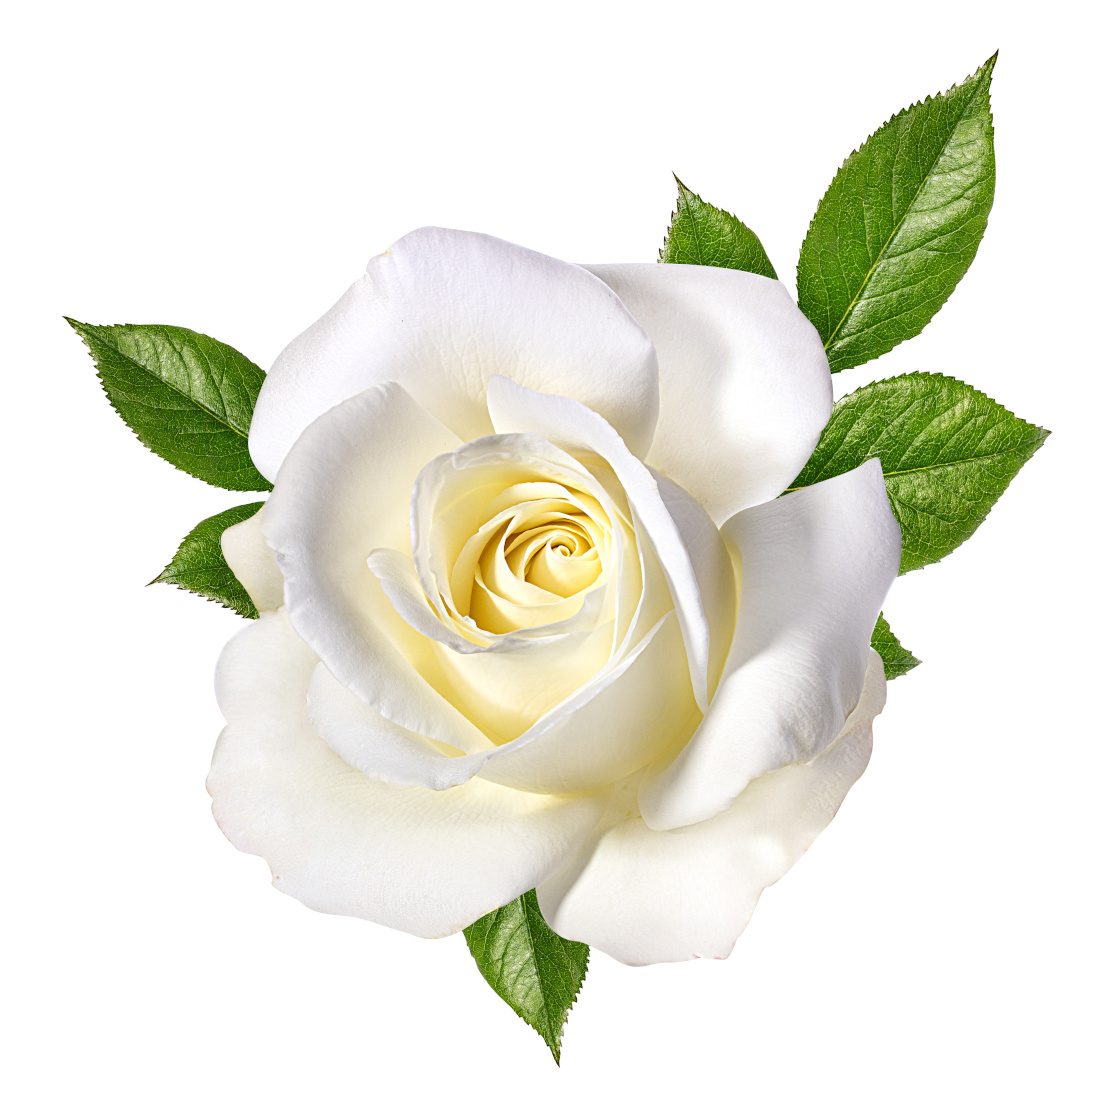 White rose in full bloom